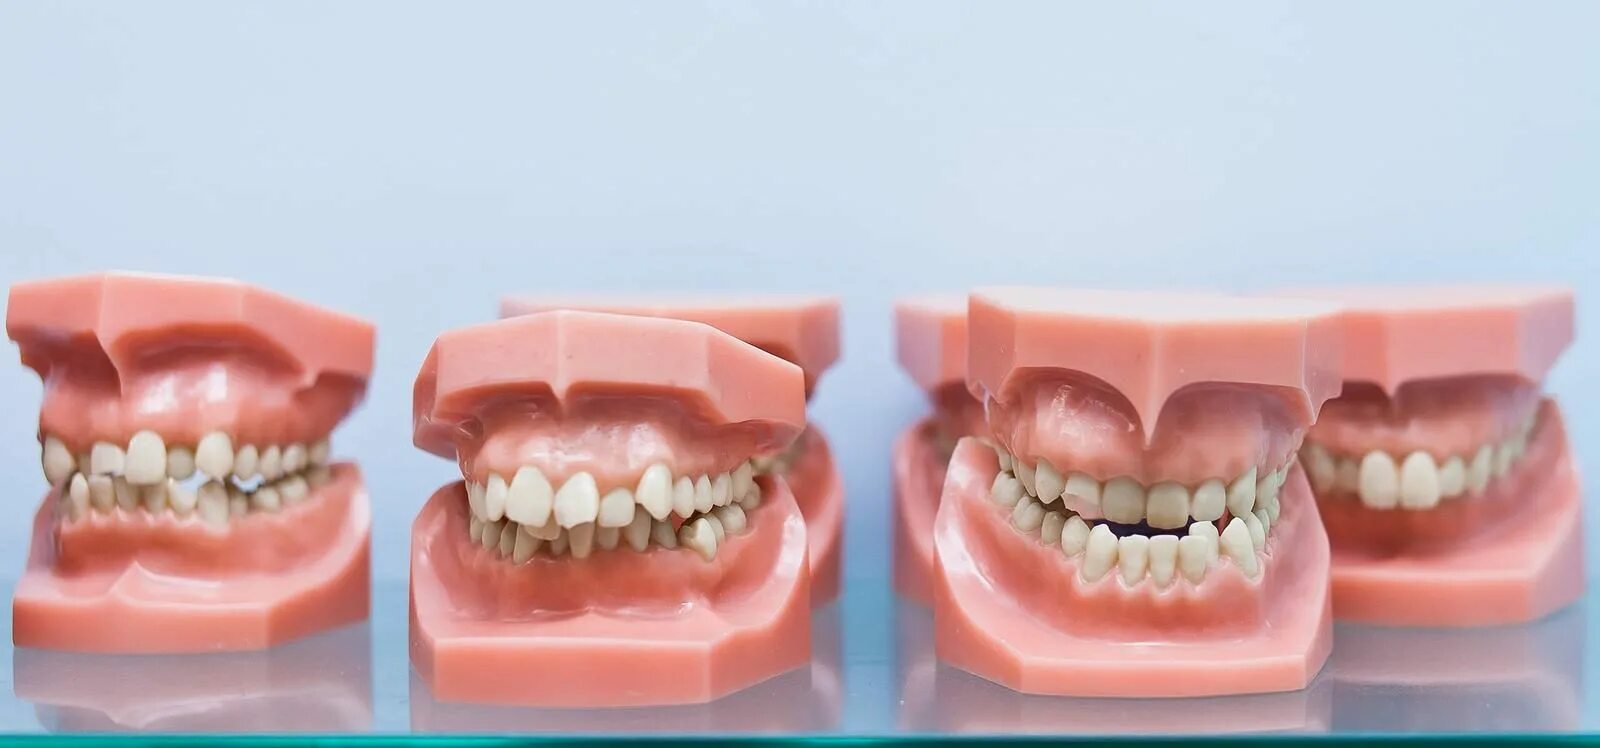 Зубы при закрытом рте. Дистальный прикус челюсти. Дистальный прикус с ровными зубами. Правильный прикус челюсти. Правильный и неправильный прикус.